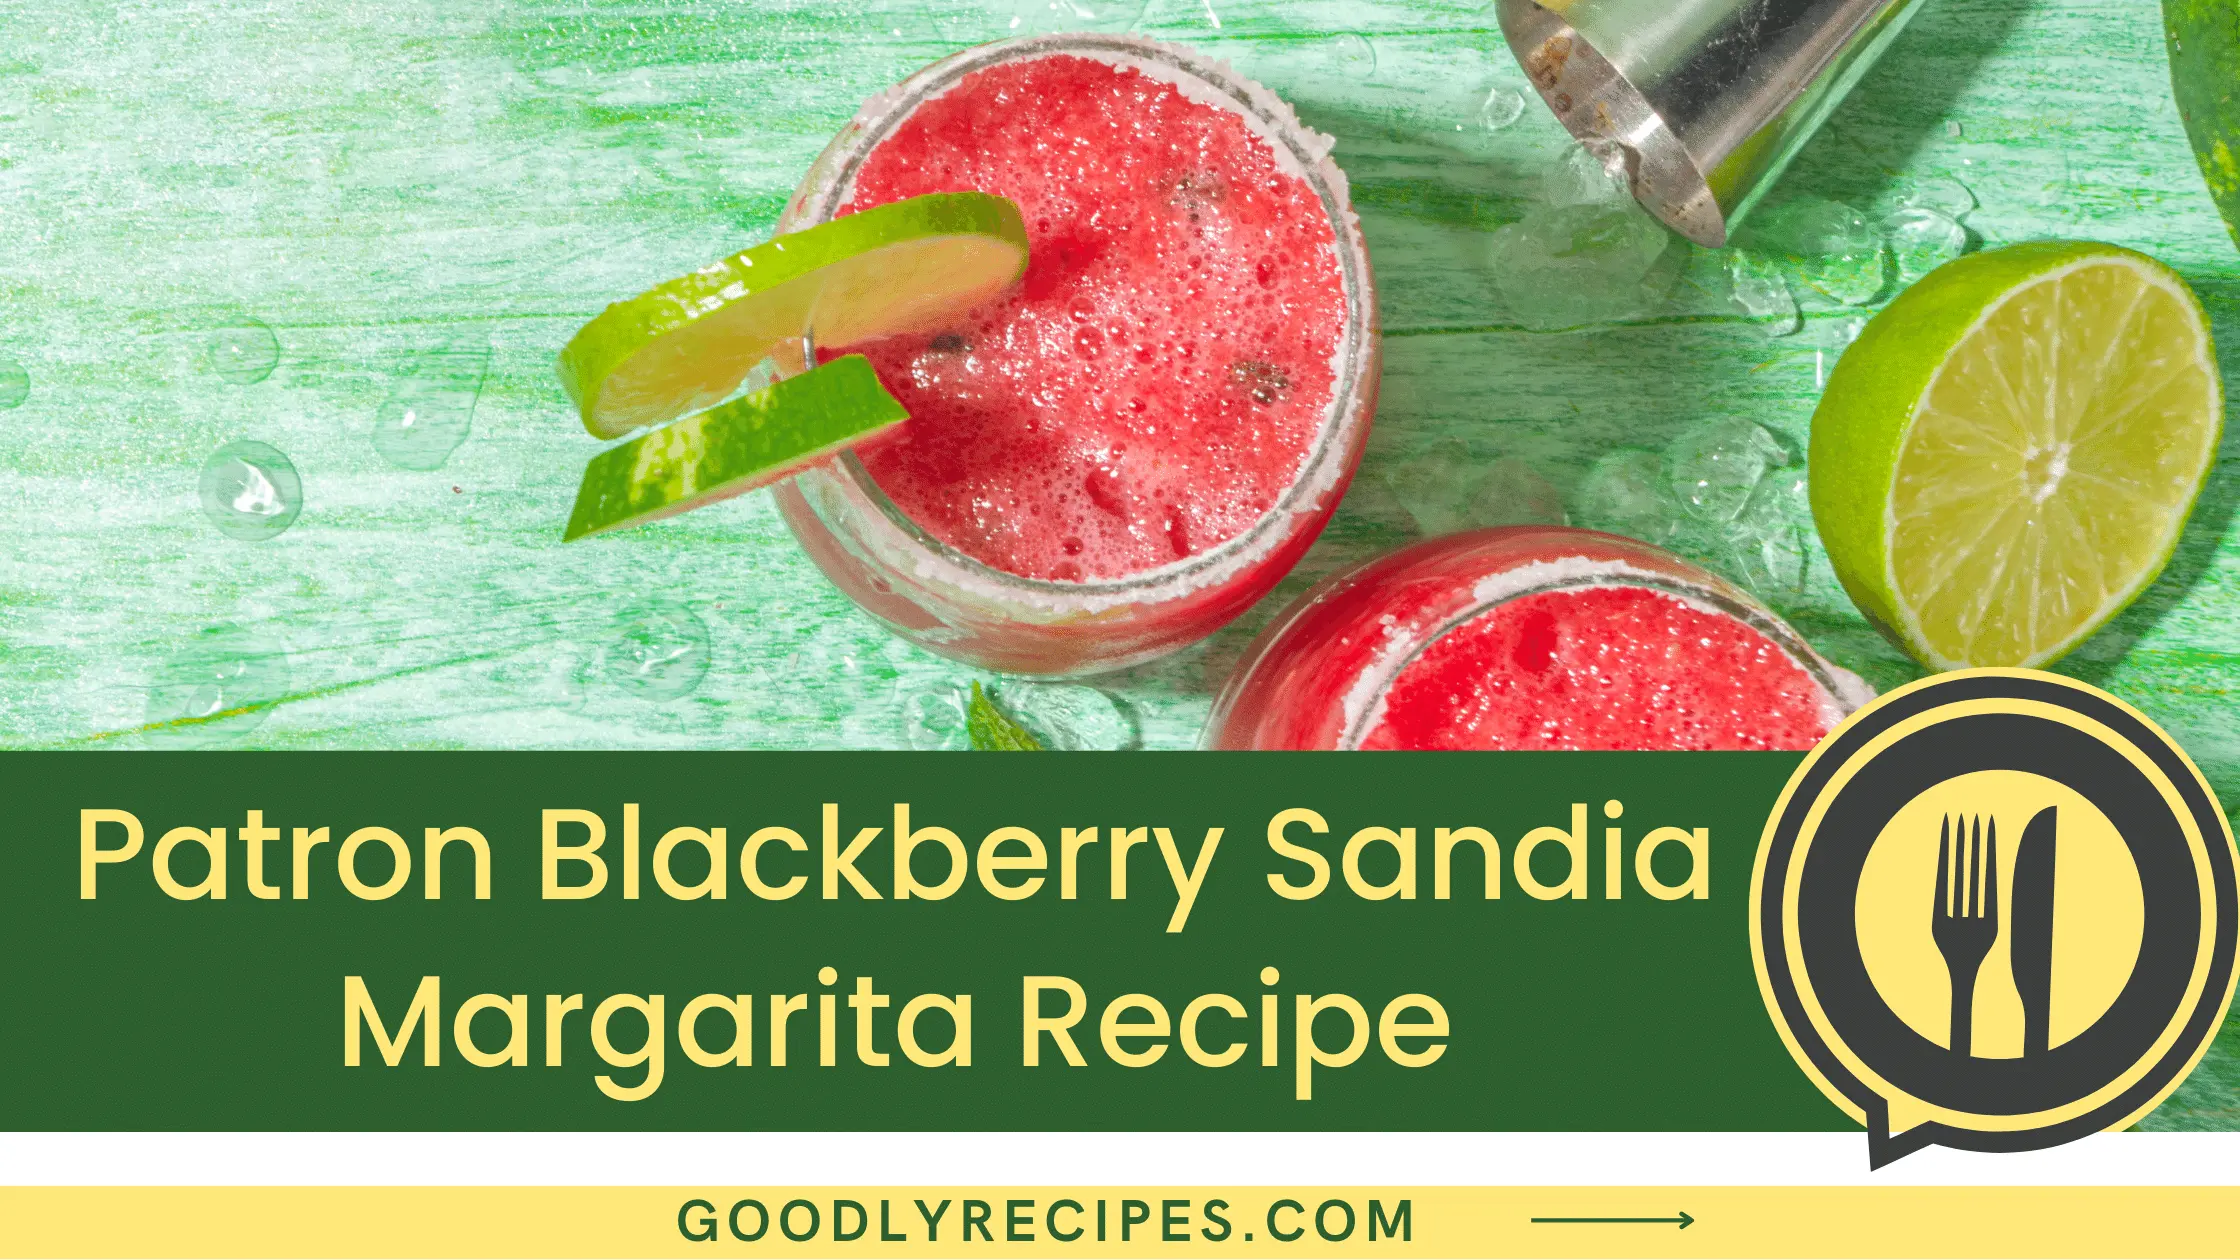 What Is Patron Blackberry Sandia Margarita Recipe?